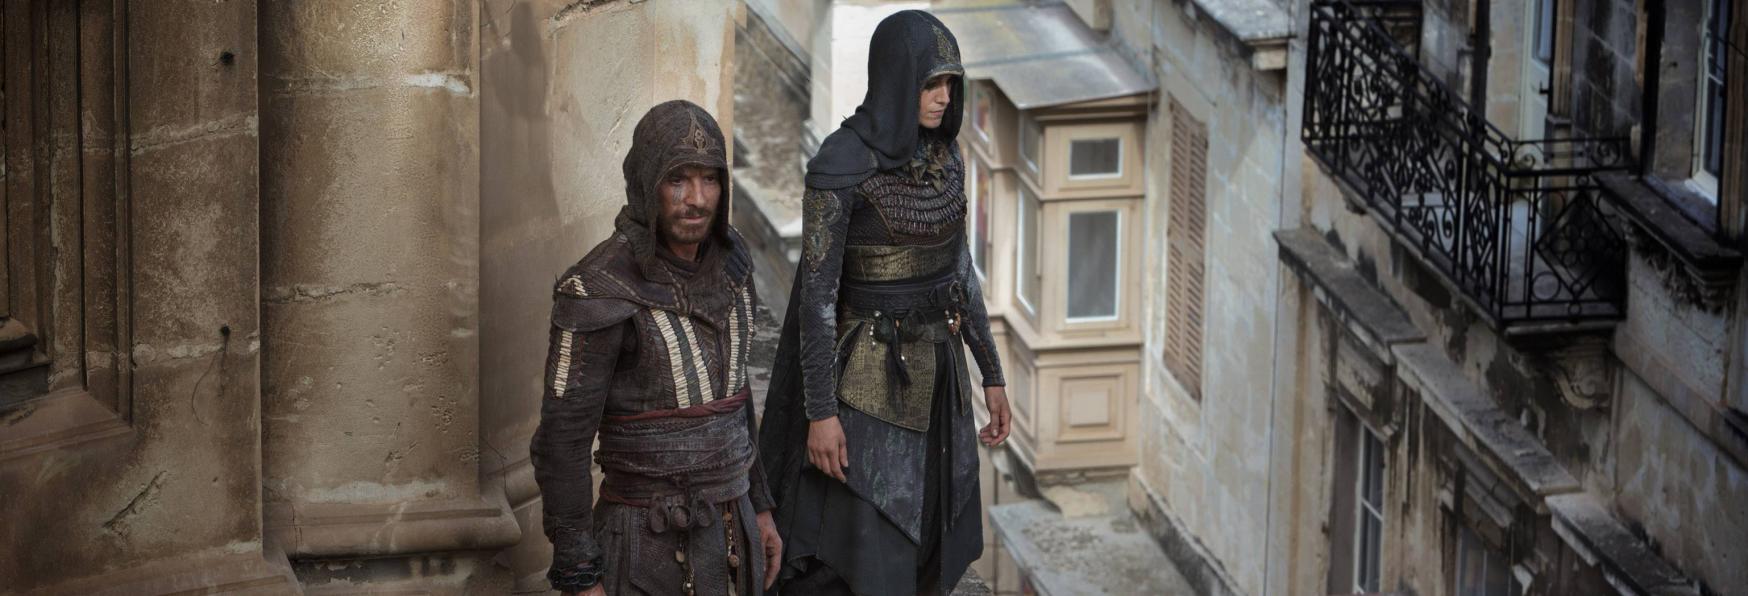 Assassin's Creed: aggiornamenti sulla Produzione della Serie TV di Netflix